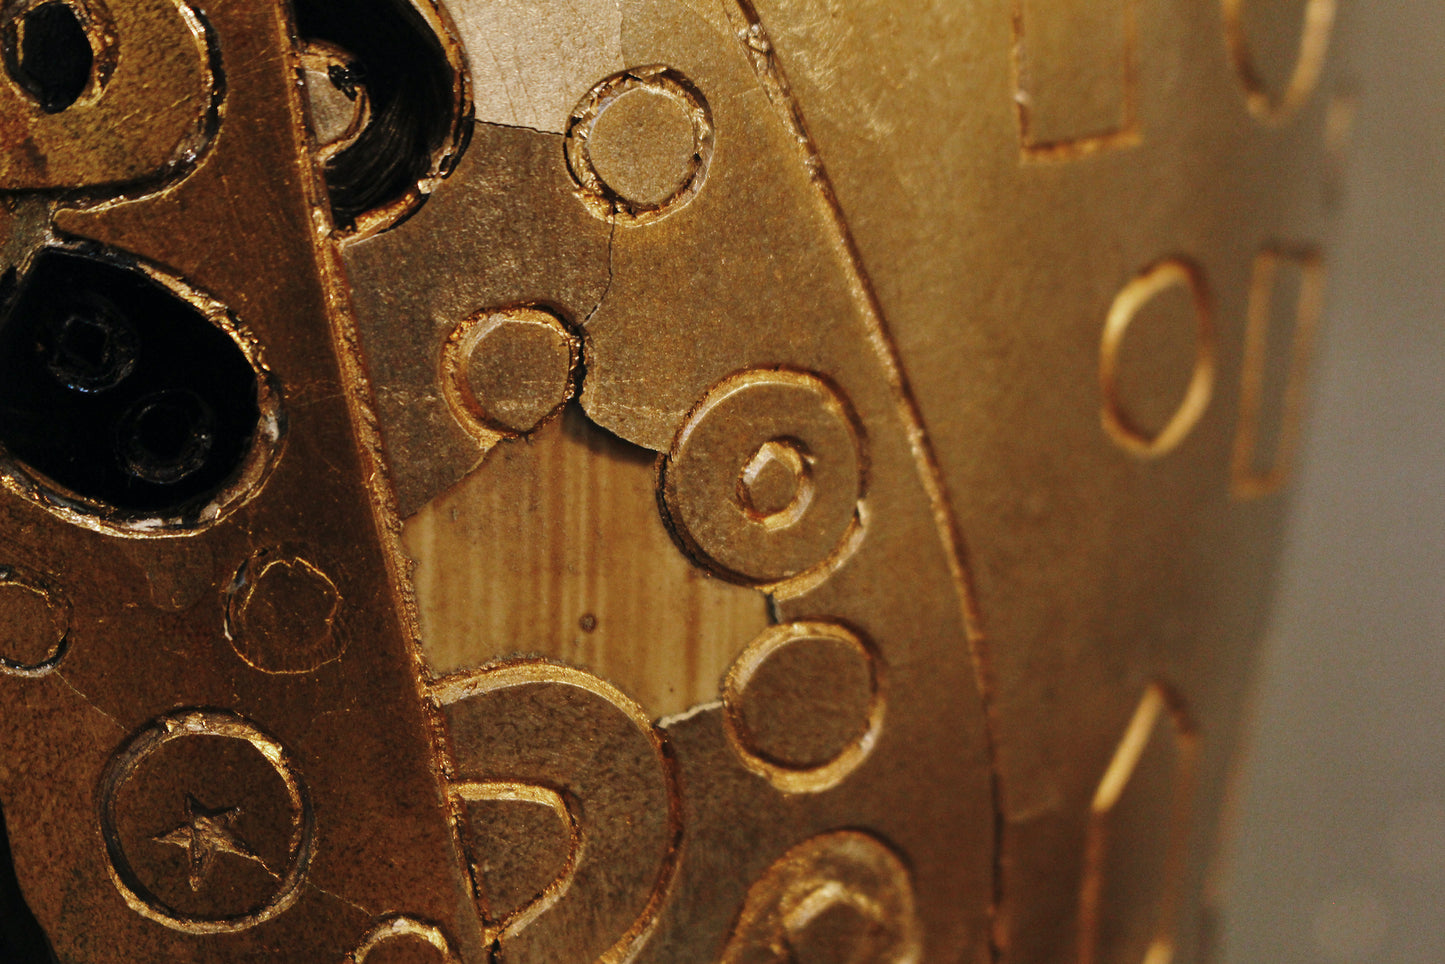 Carved Golden Vase Table Lamp